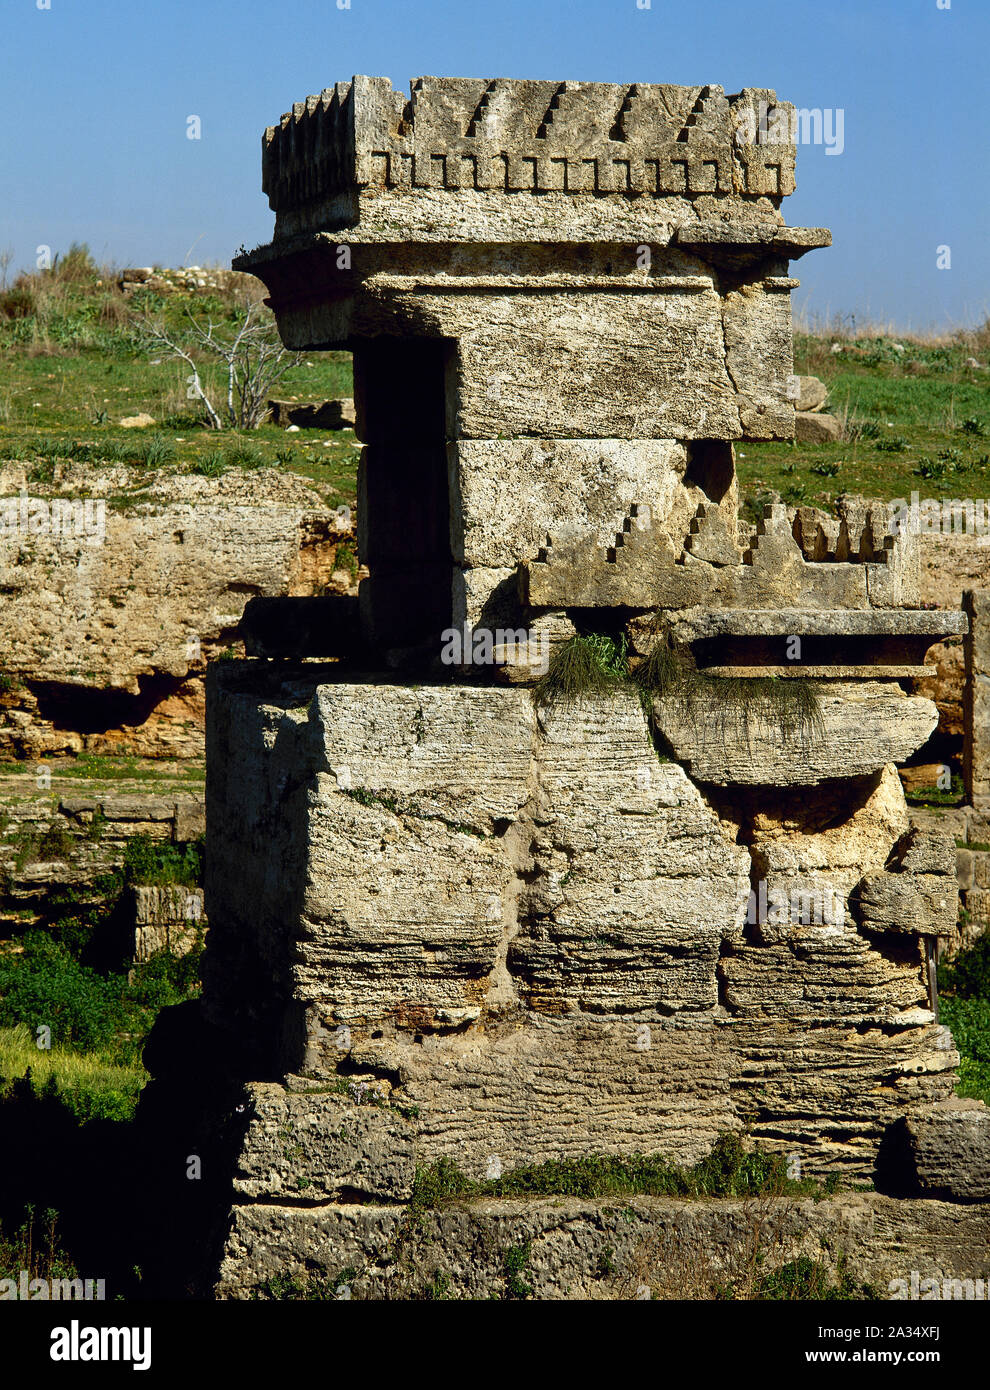 Syrien. Amrit oder Marathos. Alte phönizische Stadt im 3. Jahrtausend v. Chr. gegründet wurde. Tempel (Ma'Abed), Cella in der Mitte des Hofes. Foto vor dem syrischen Bürgerkrieg. Stockfoto